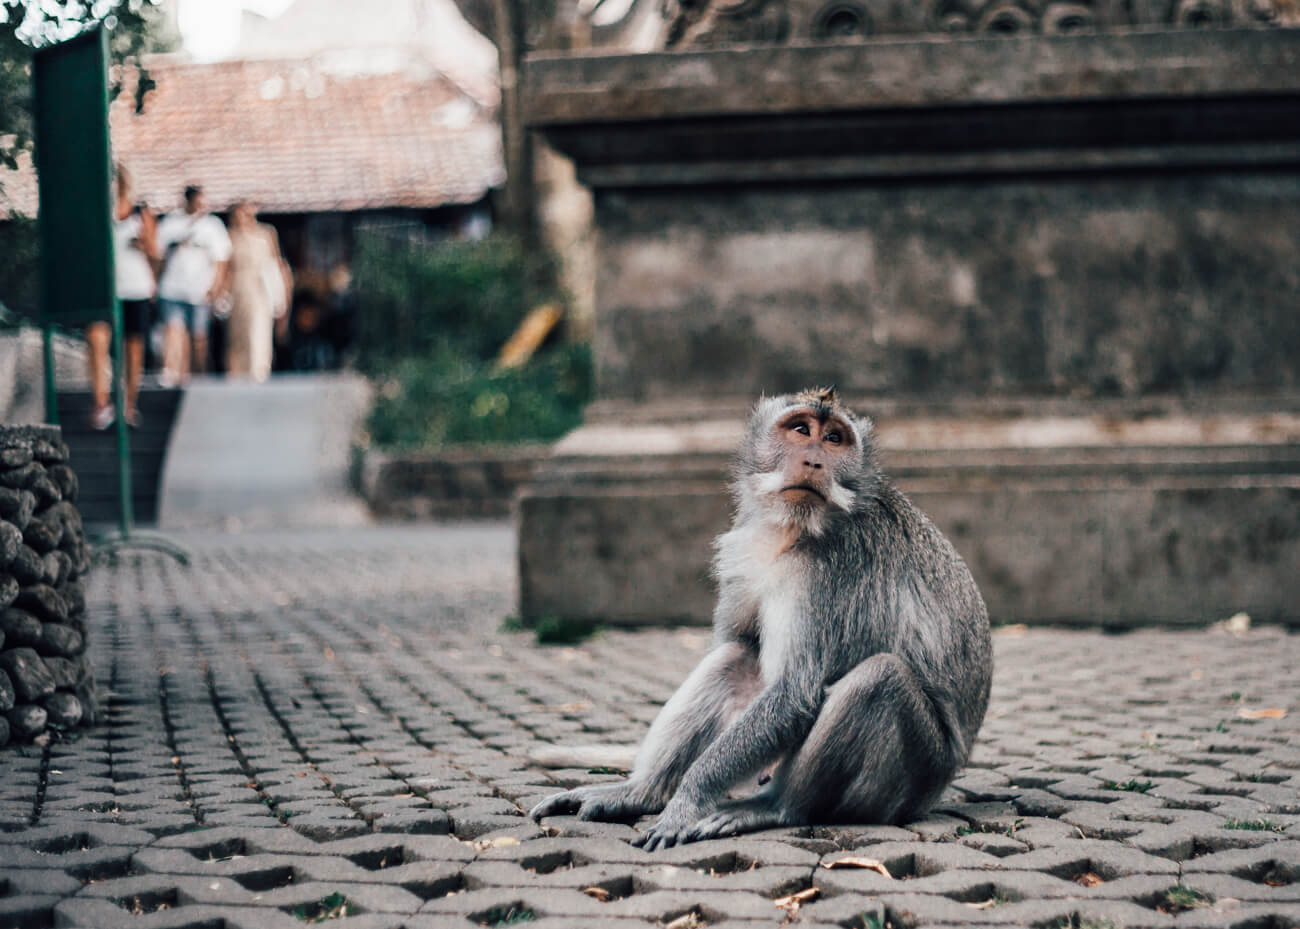 Seguro Viagem, Ásia - acidentes com animais, em especial os macacos